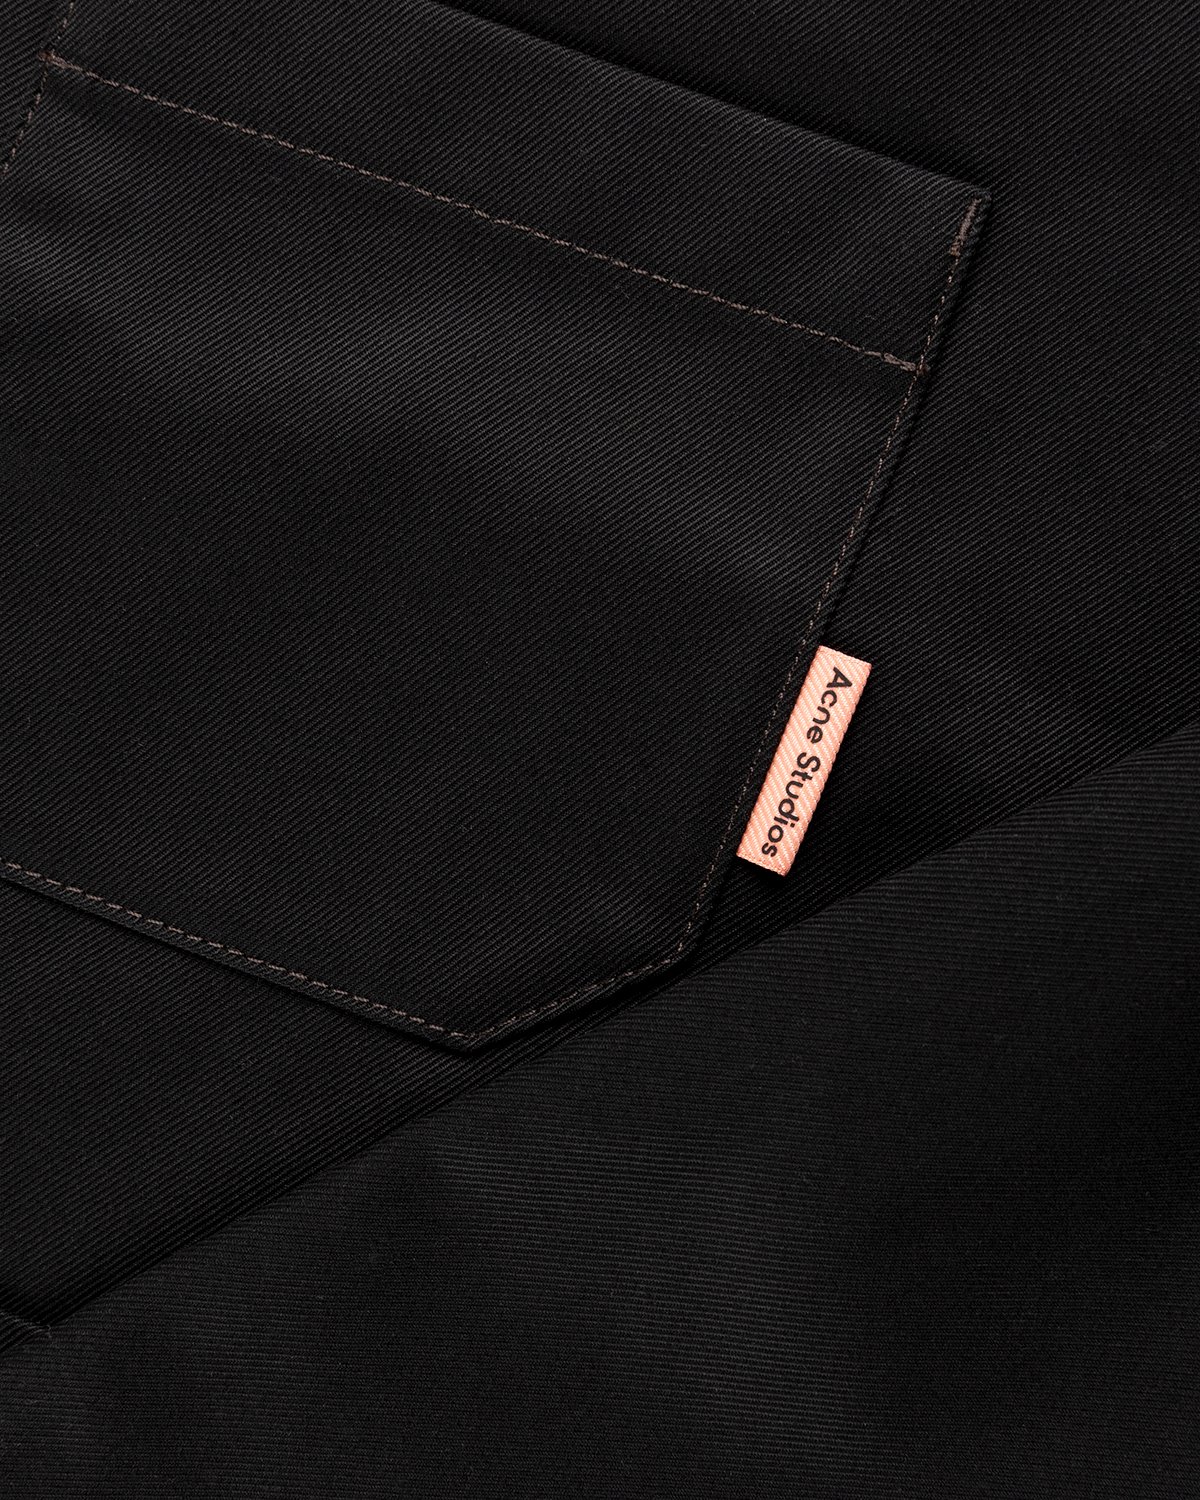 Acne Studios - Cotton Twill Jacket Black - Clothing - Black - Image 6